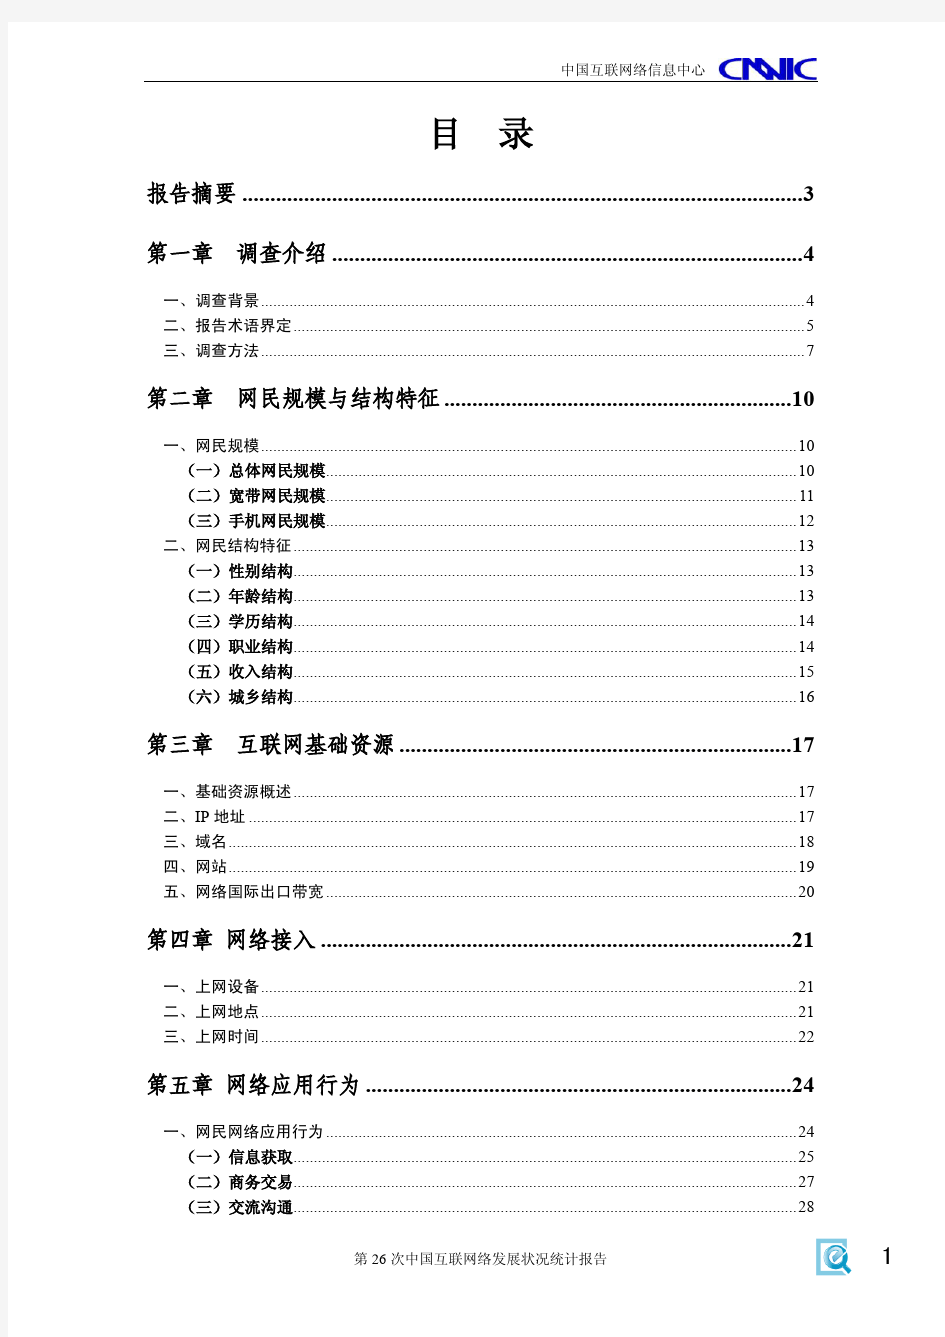 中国互联网络发展状况统计报告(2010年7月).PDF